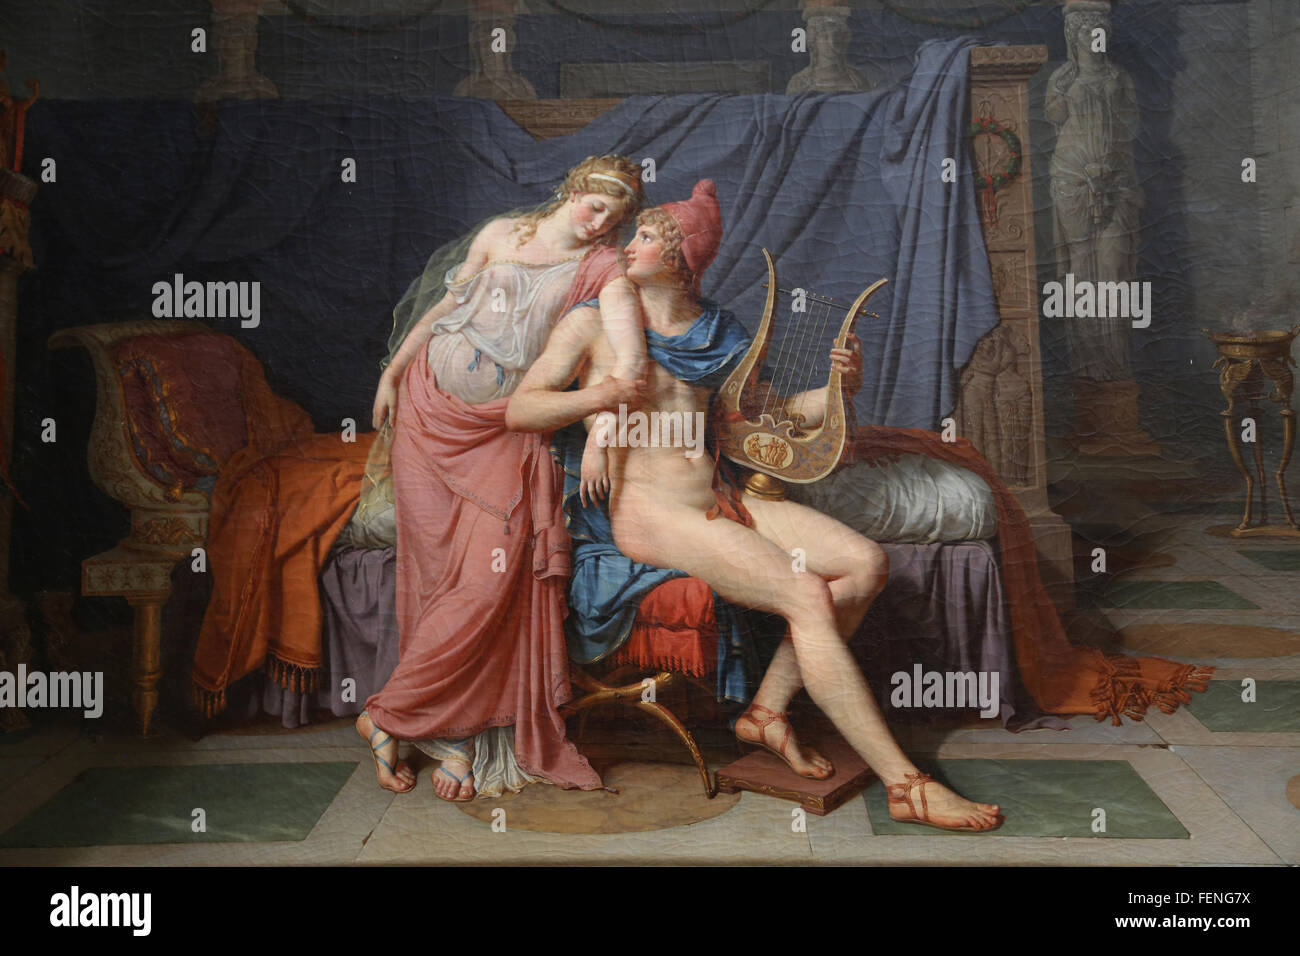 Die Liebe von Paris und Helena, 1788. Öl auf Leinwand. Von Jacques-Louis David (1748-1825). Neoklassizismus. Louvre-Museum. Paris. Stockfoto